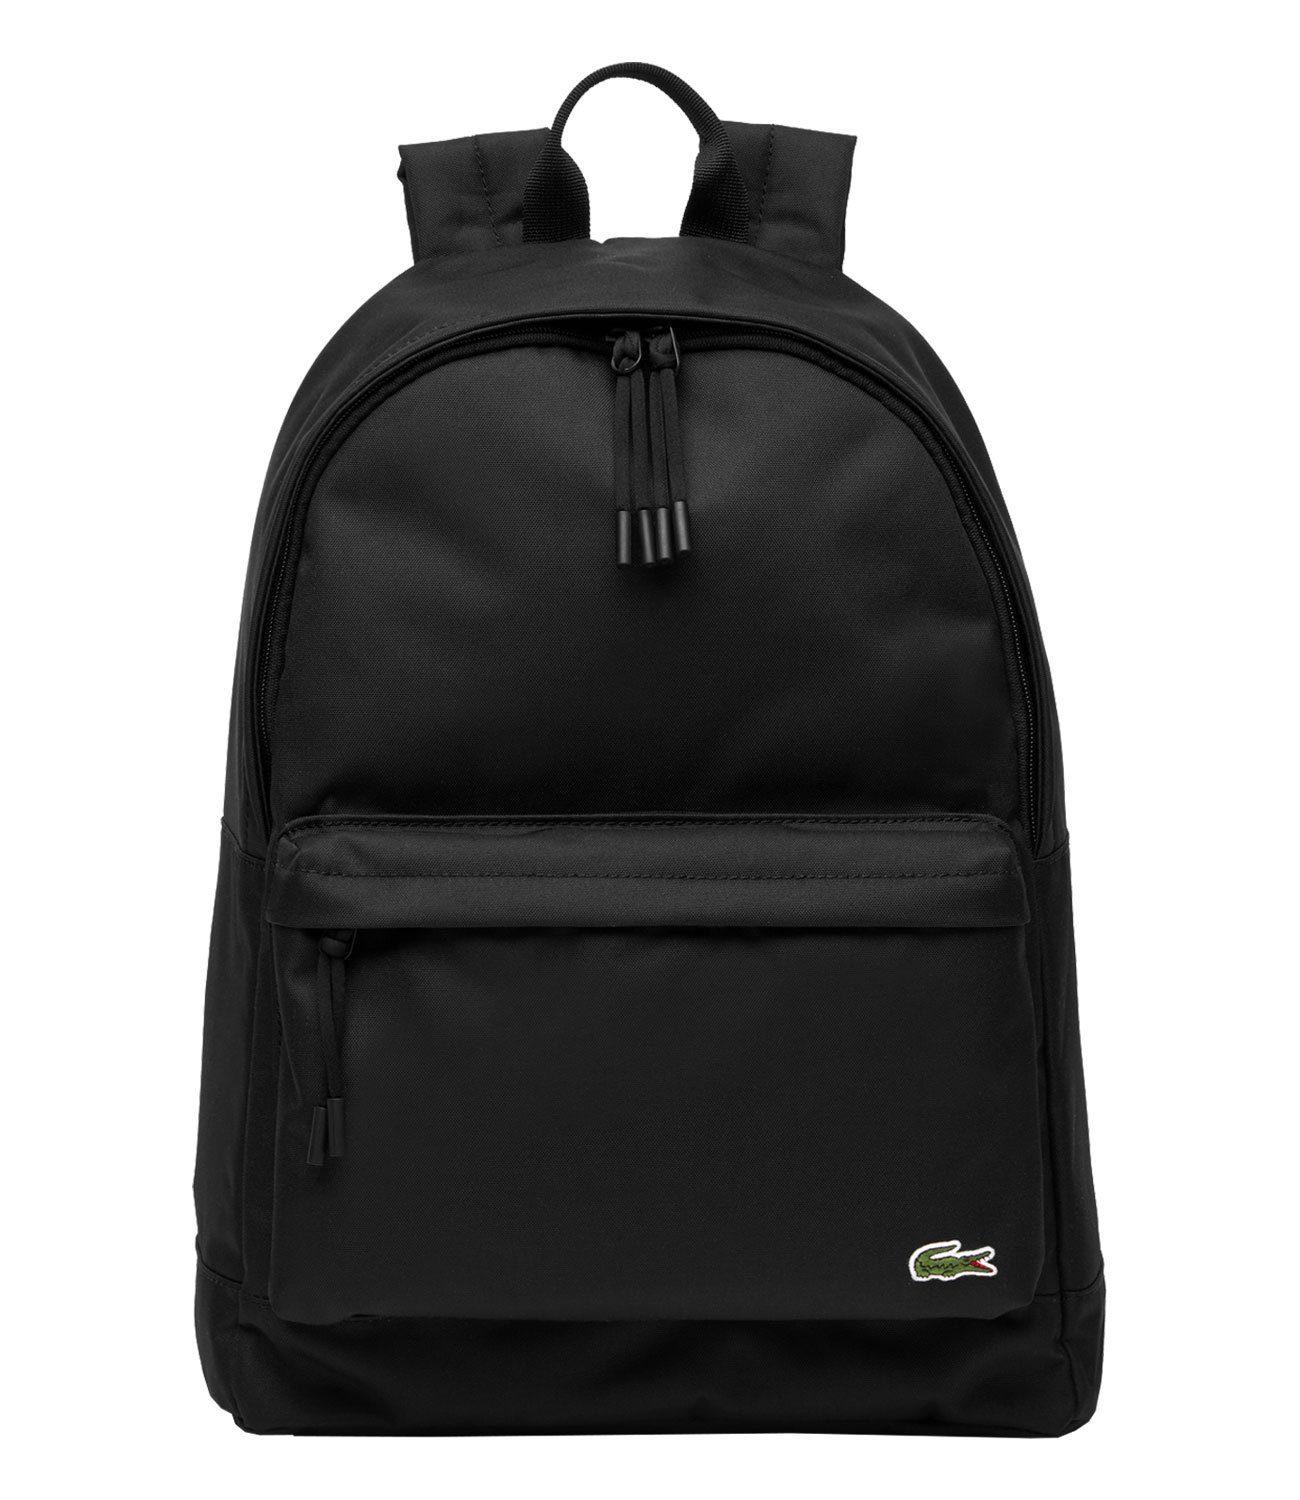 Lacoste Freizeitrucksack Backpack, mit separatem gepolstertem Laptopfach 991 black